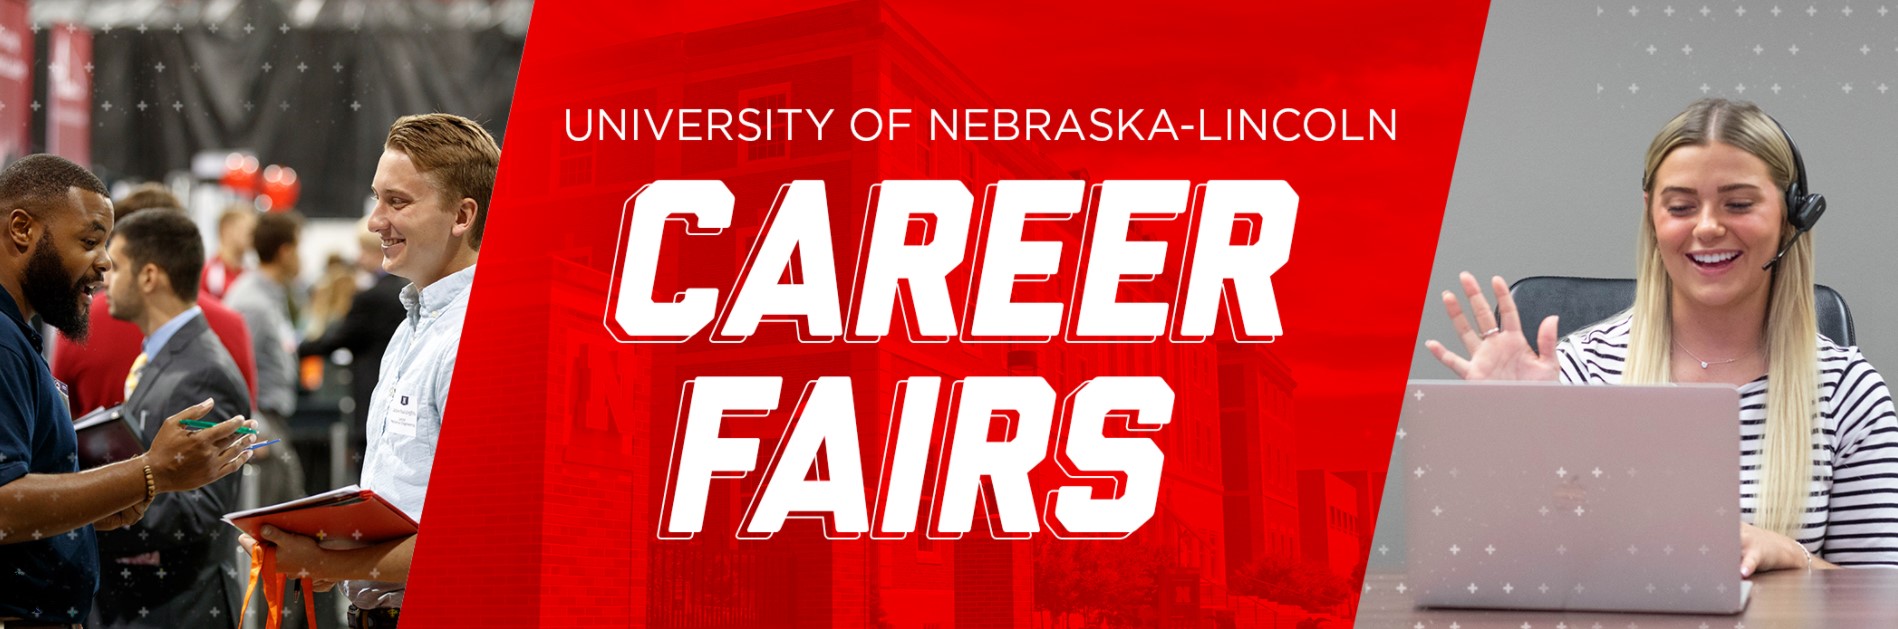 University Career Fairs Announce University of NebraskaLincoln